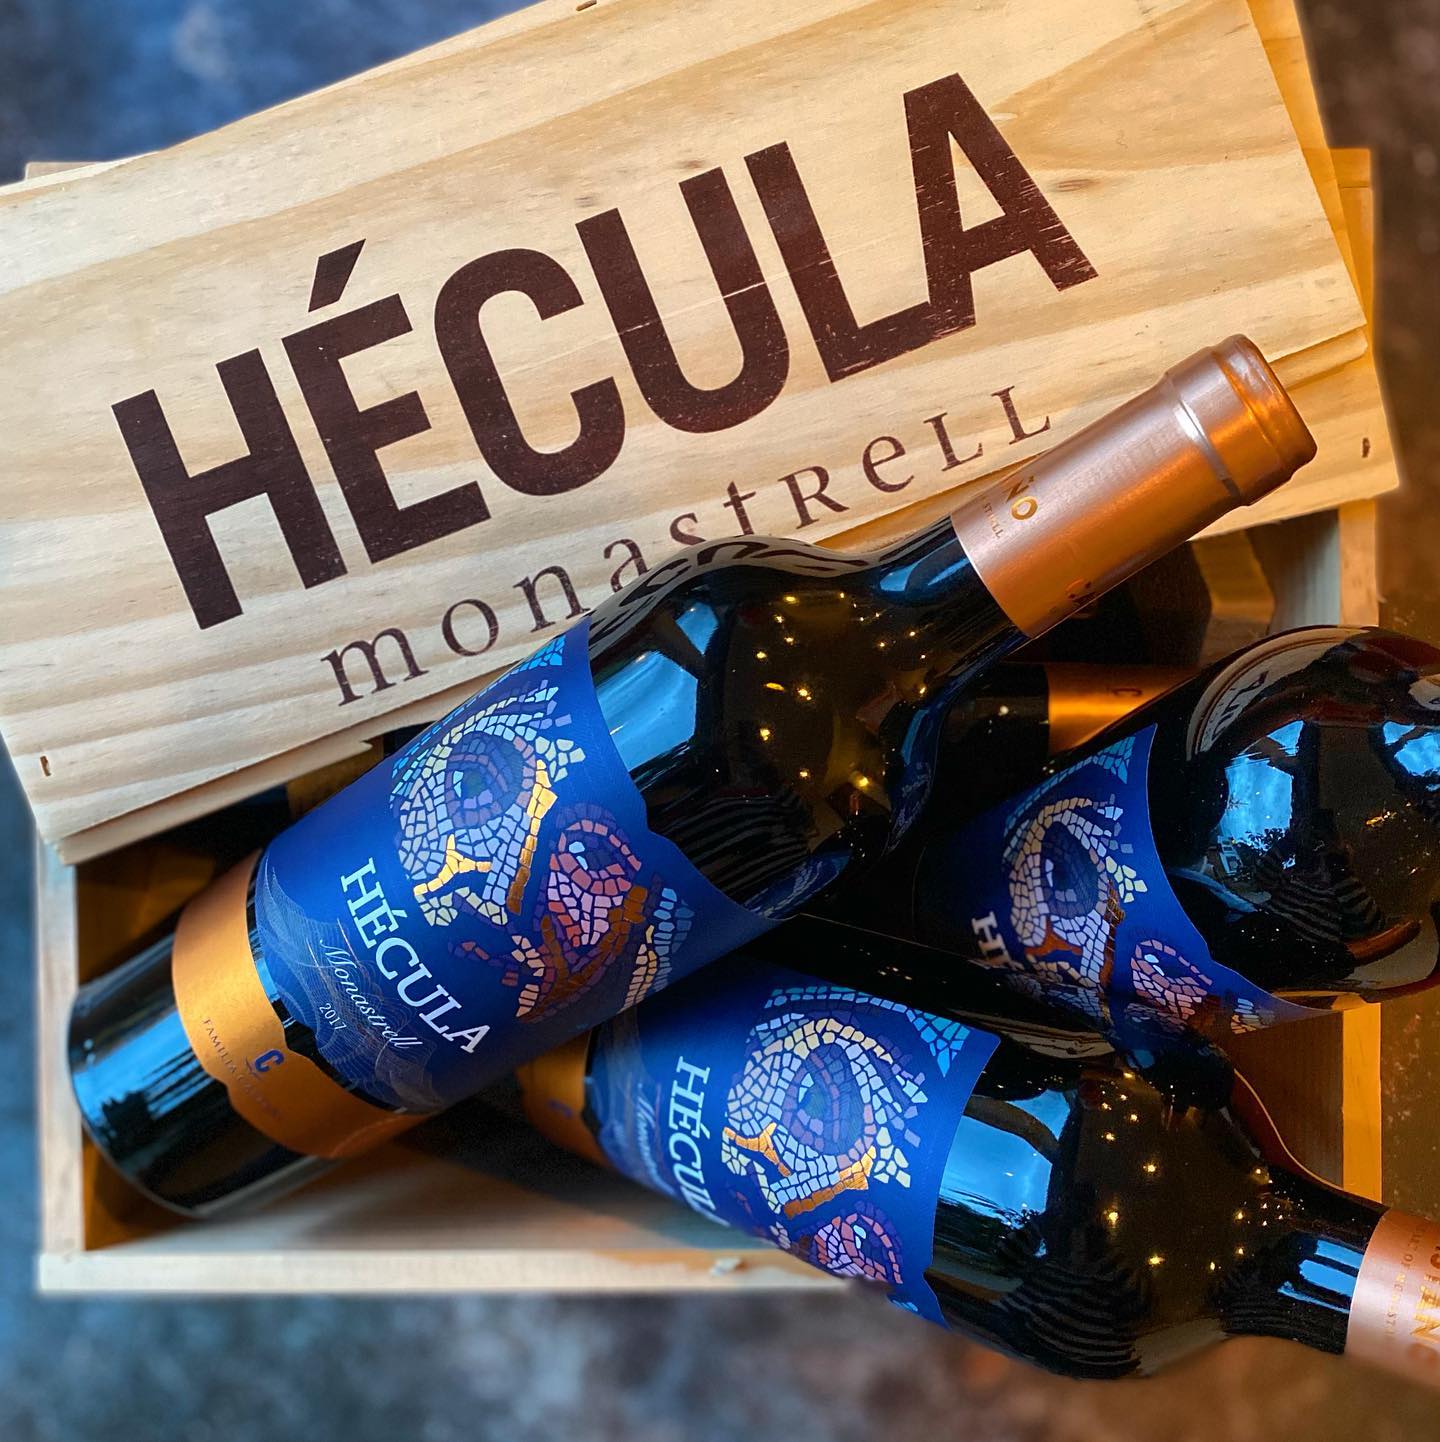 Hecula Wein